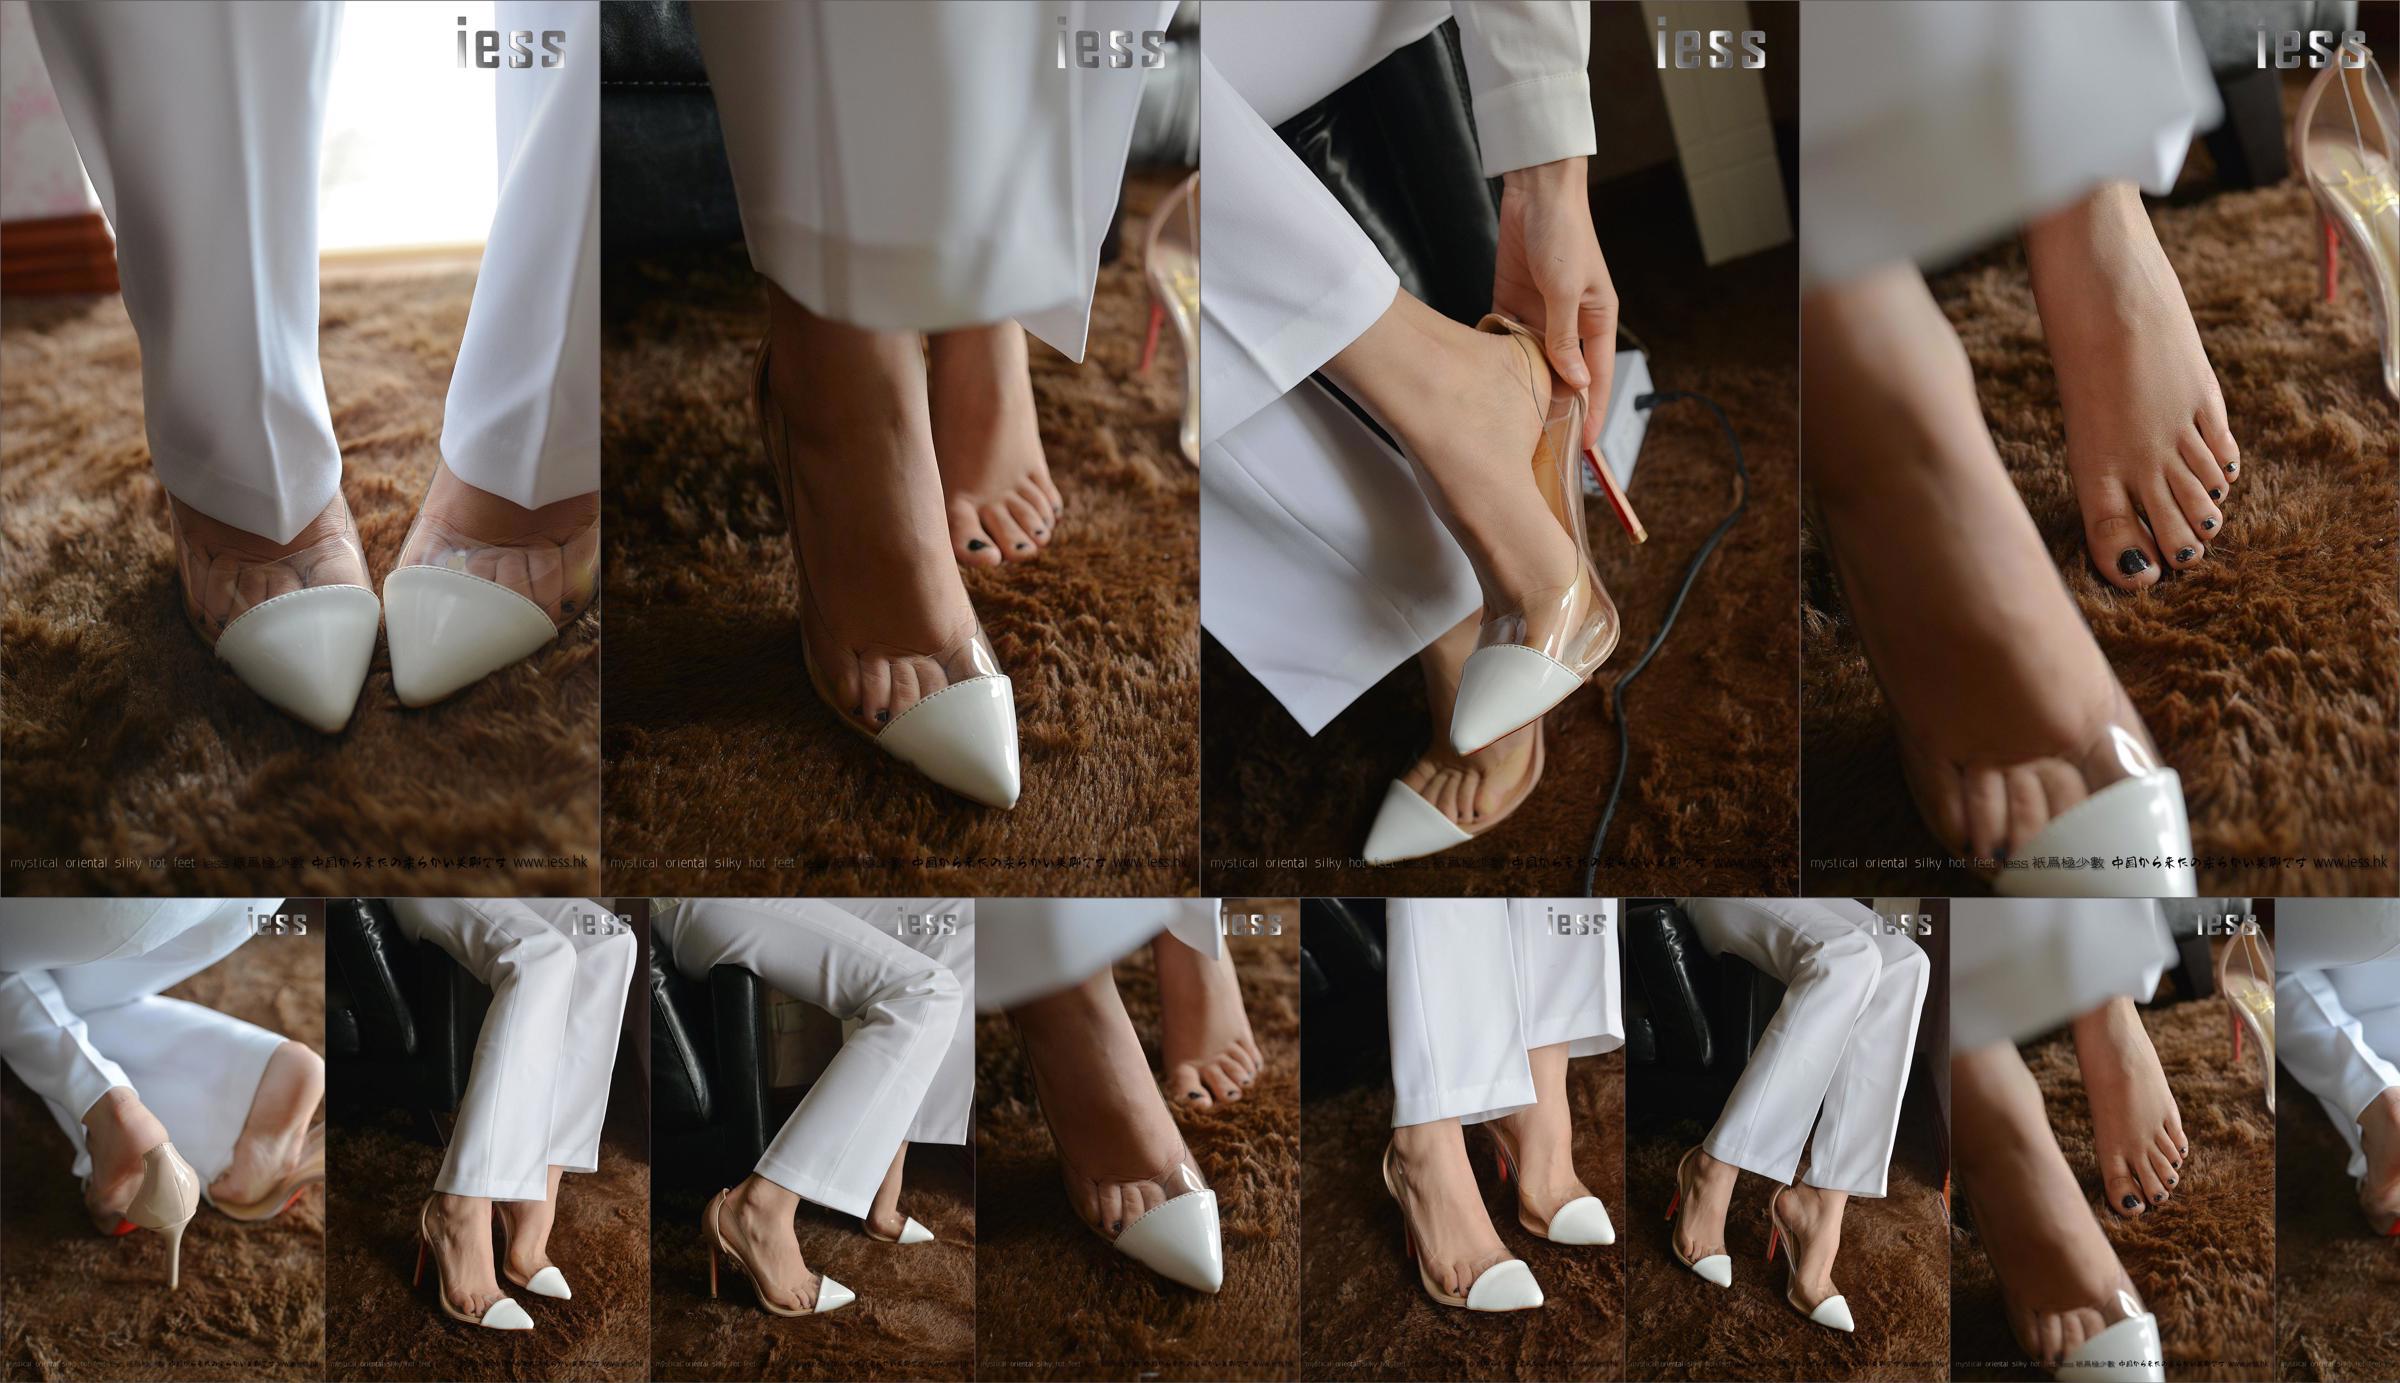 Seidiger Fuß Bento 058 Spannung "Collection-Bare Foot High Heels" [IESS Wei Si Fun Xiang] No.0e81b7 Seite 3